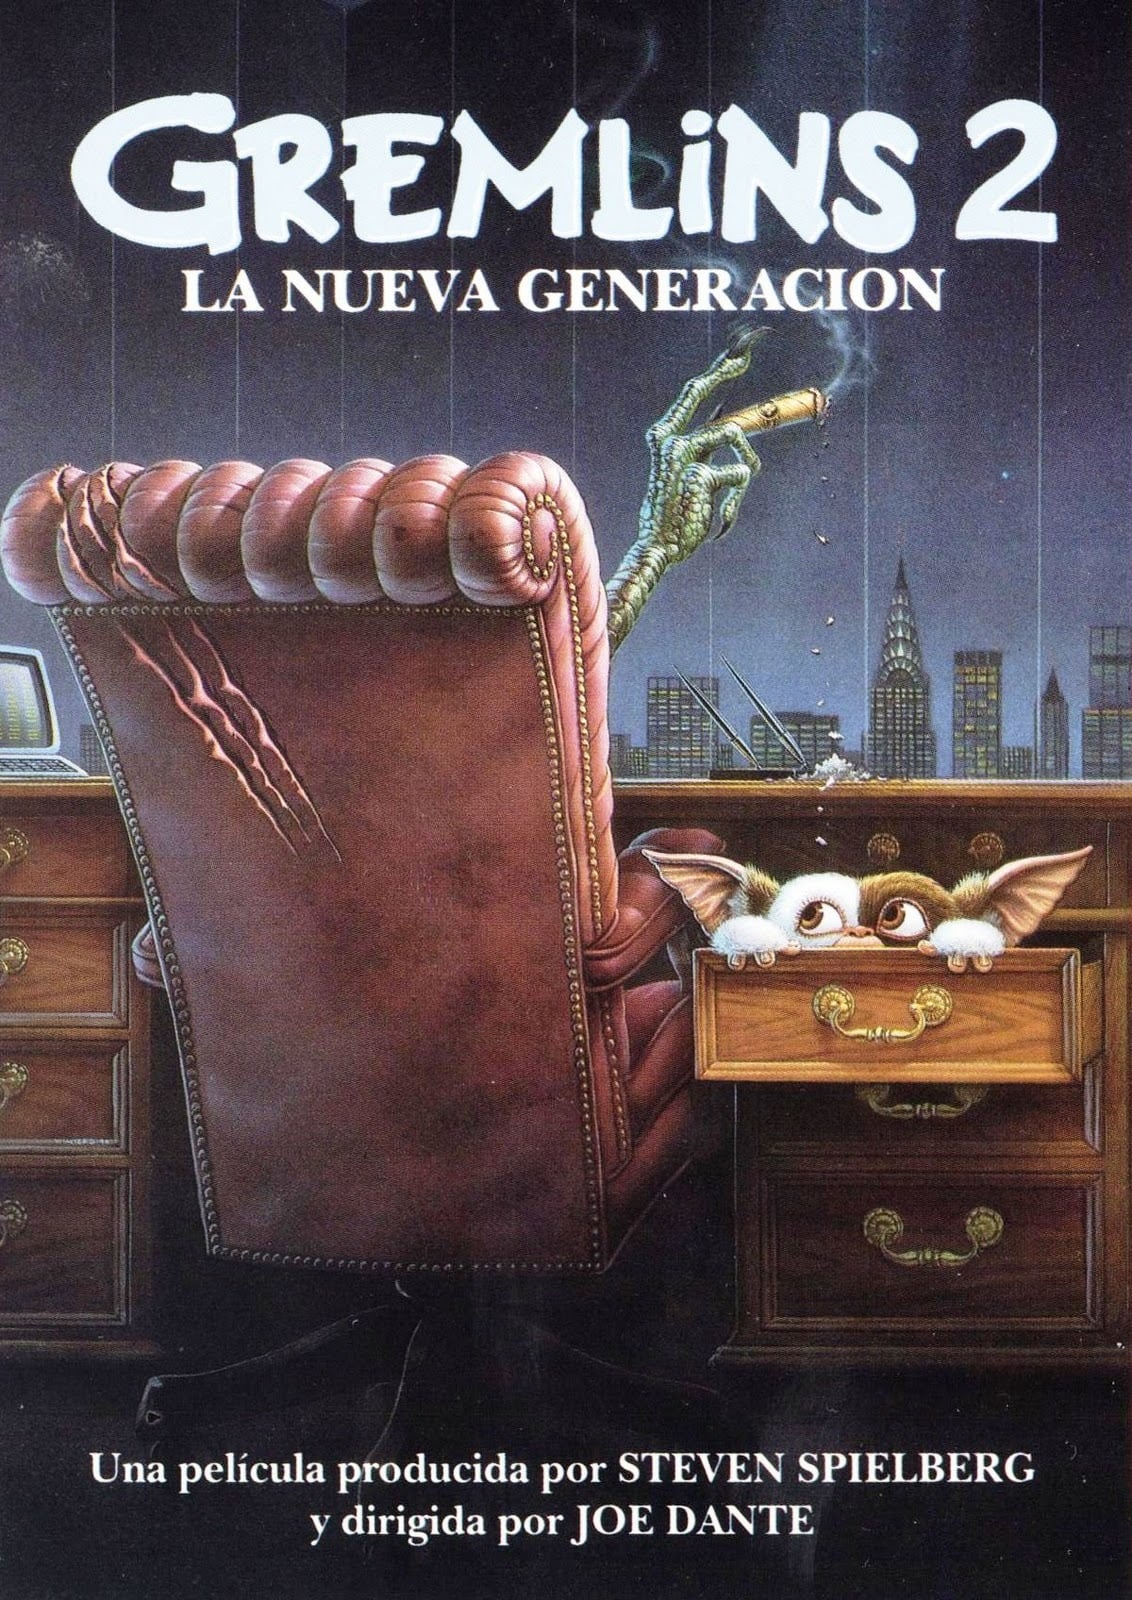 Poster de la película "Gremlins 2: La nueva generación"